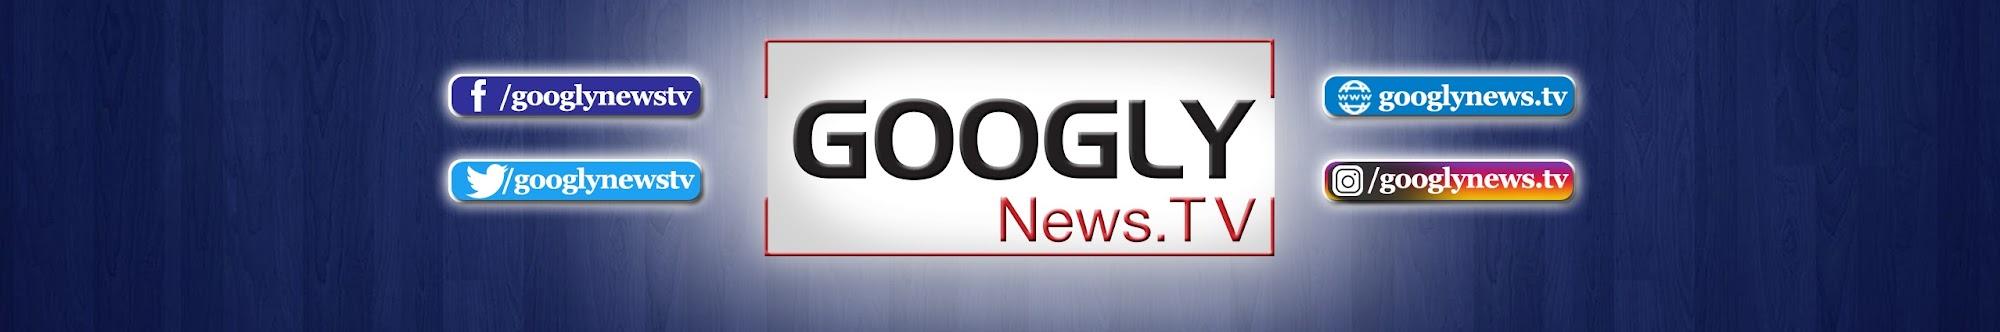 Googly News TV